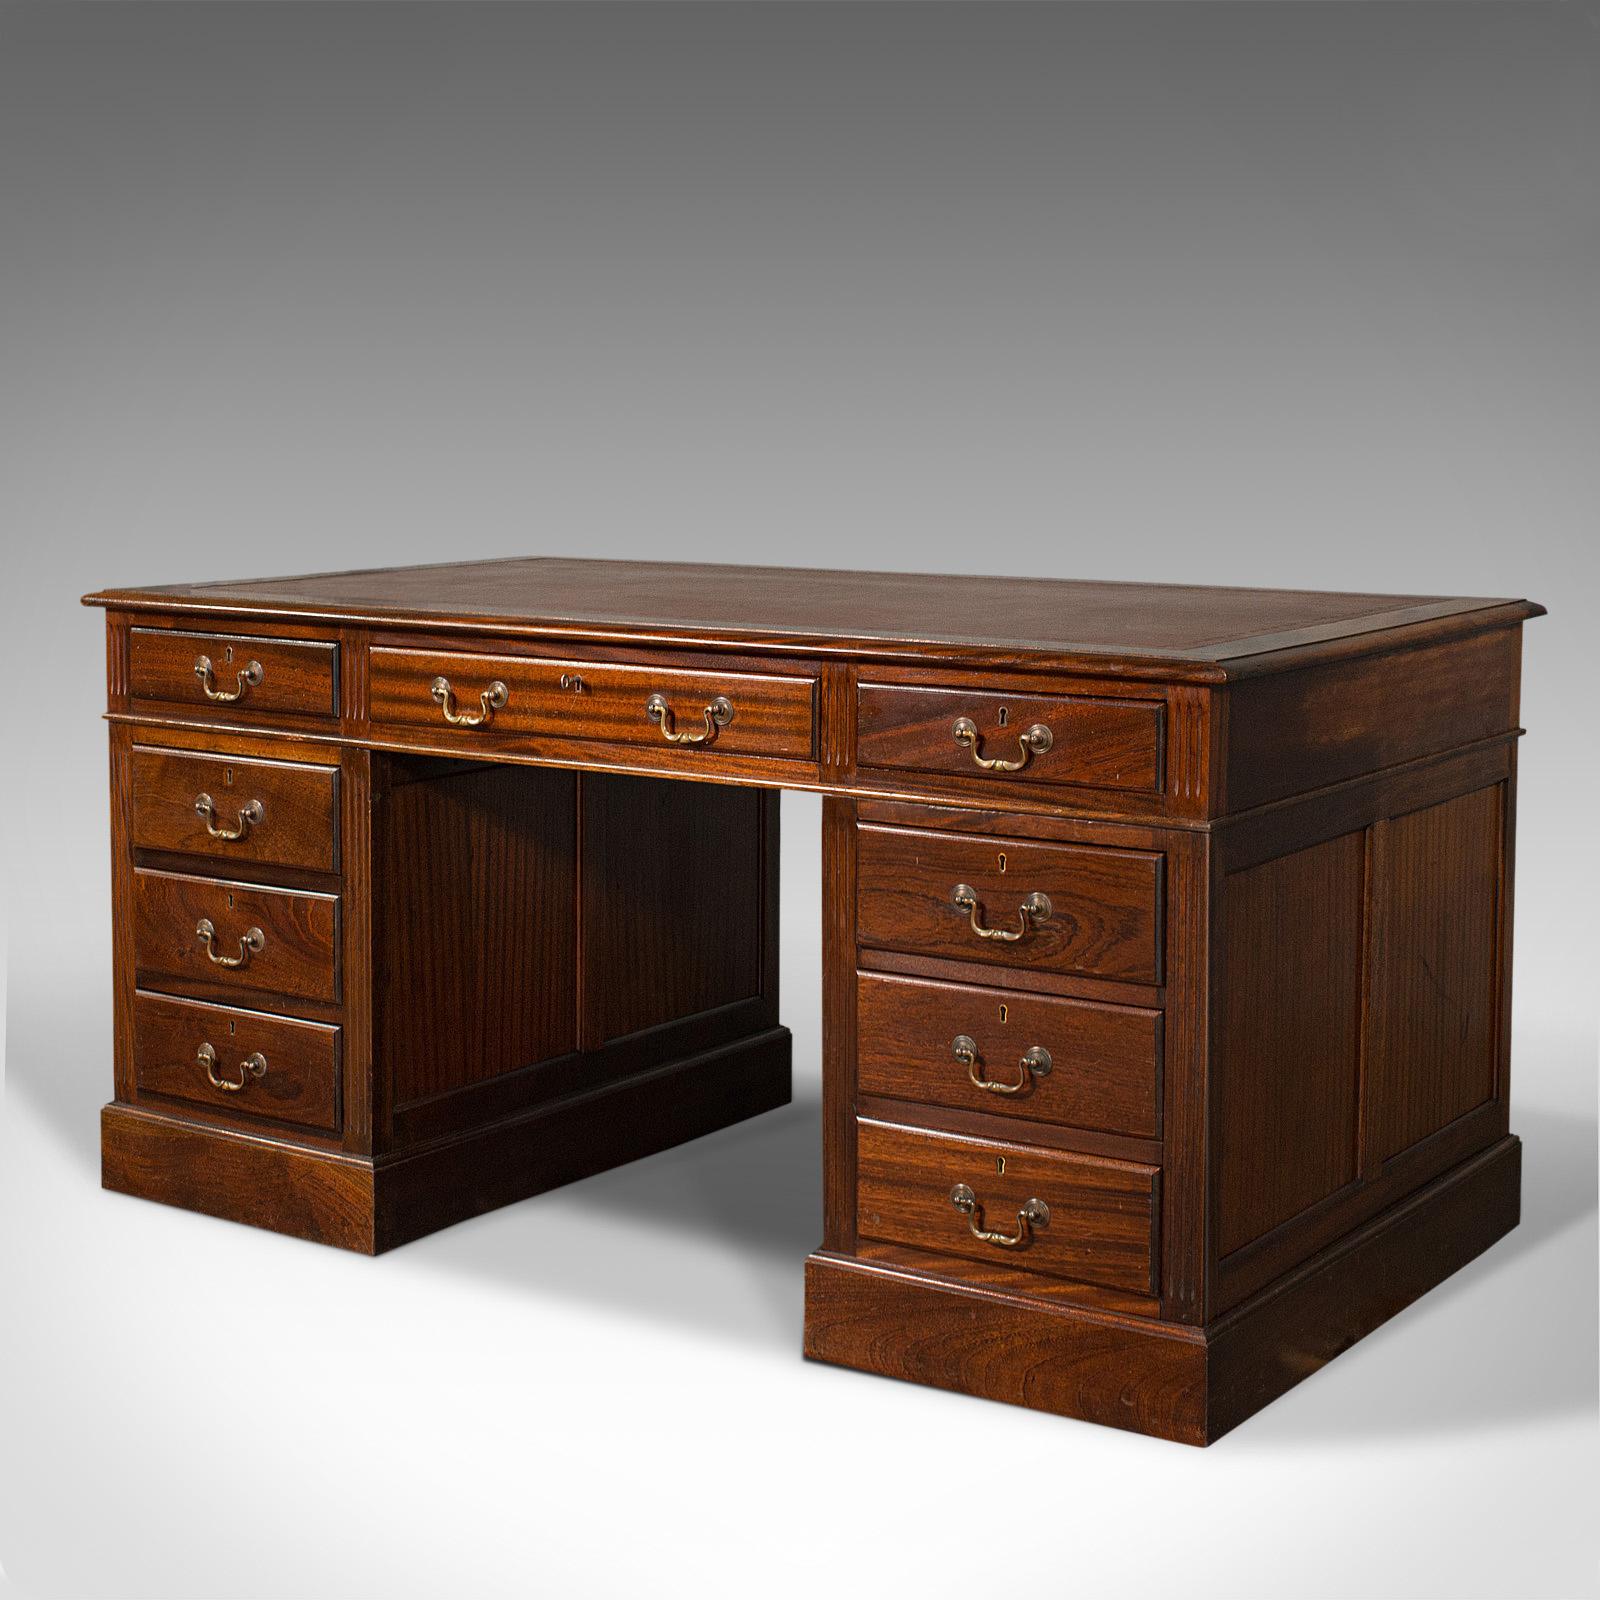 British Antique Partner's Desk, English, Mahogany, Leather, Writing Table, Edwardian